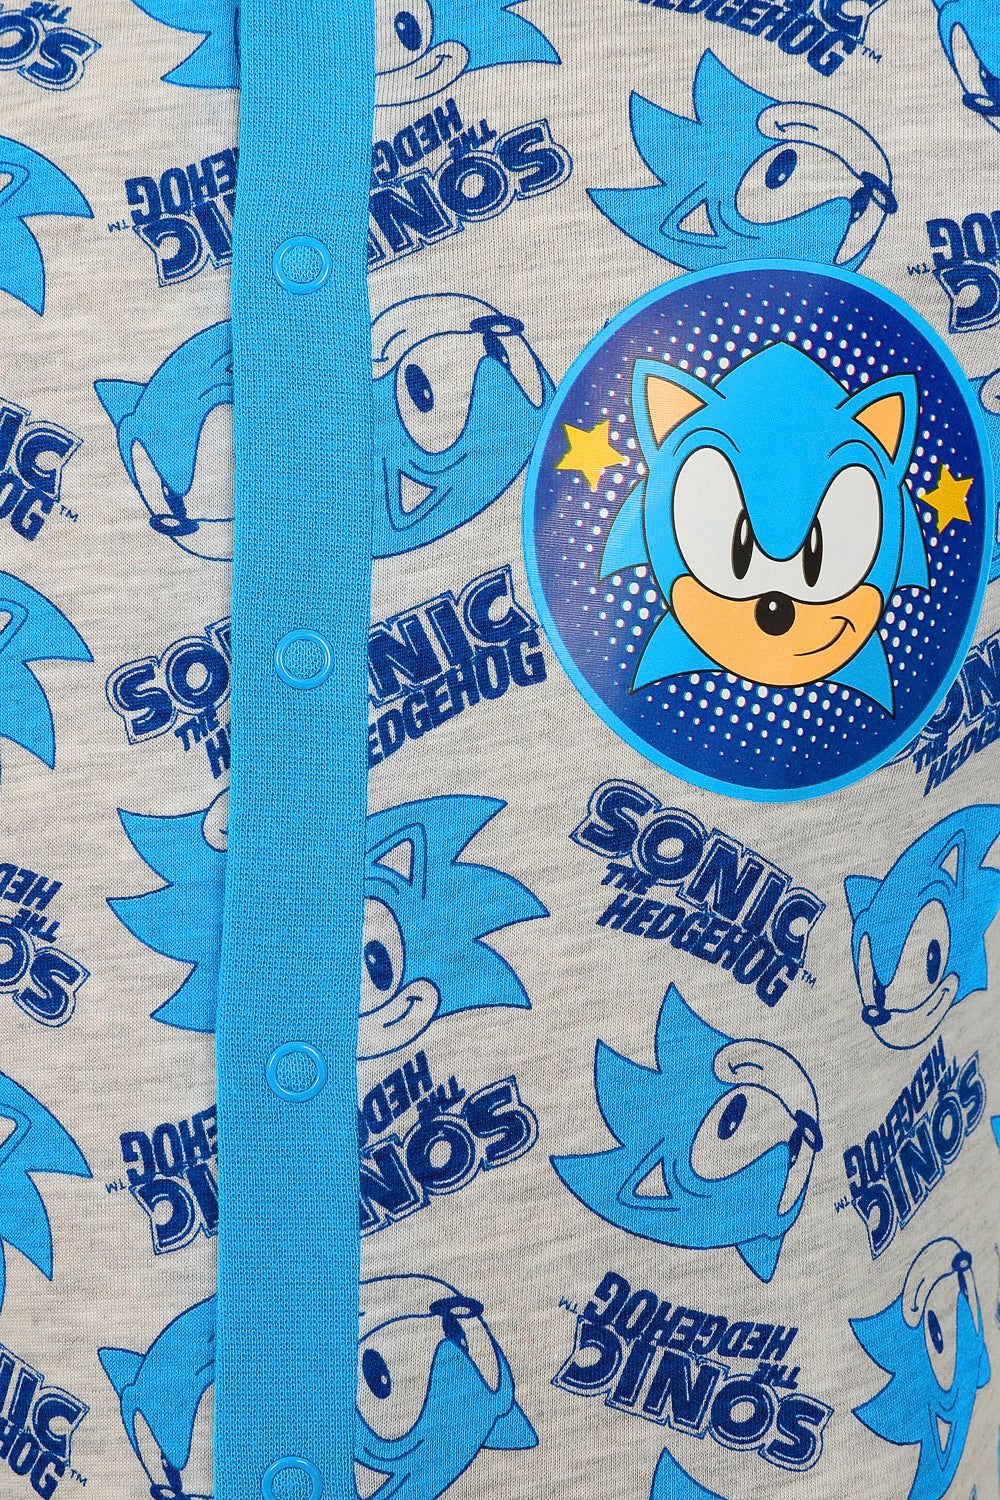 Boys Official Sega Sonic The Hedgehog Onesie - Pyjamas.com